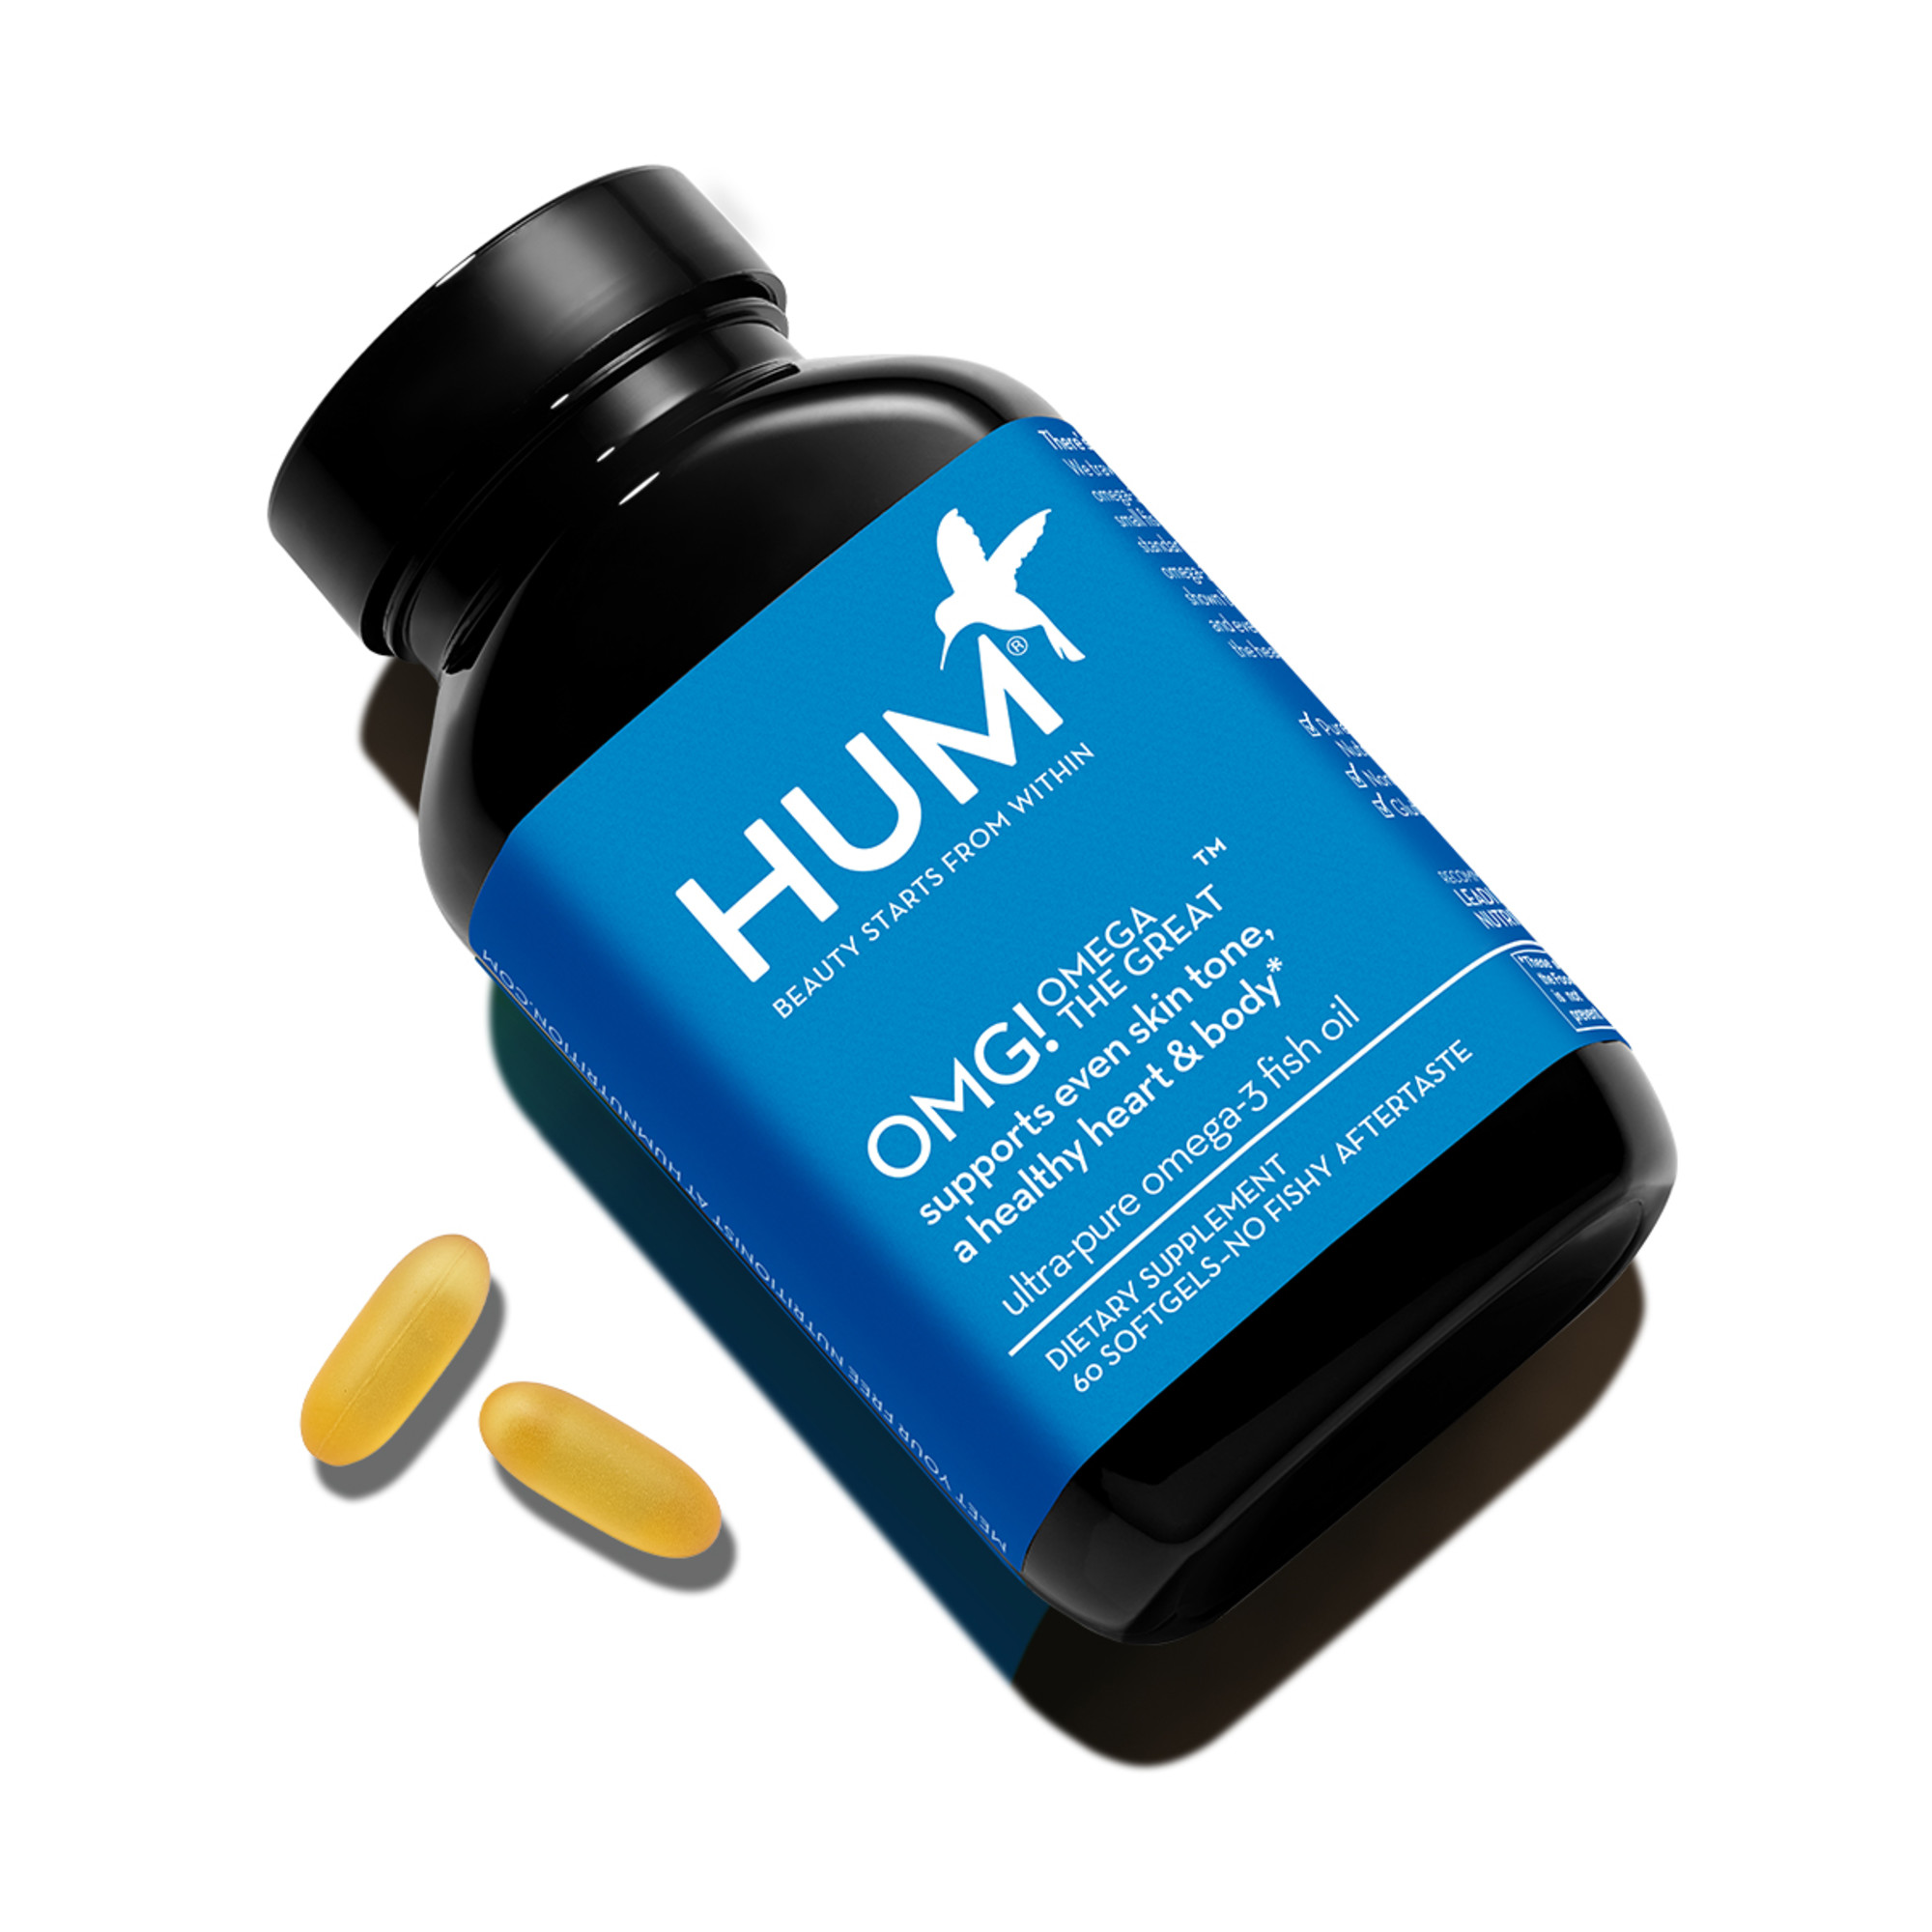 hum nutrition reviews